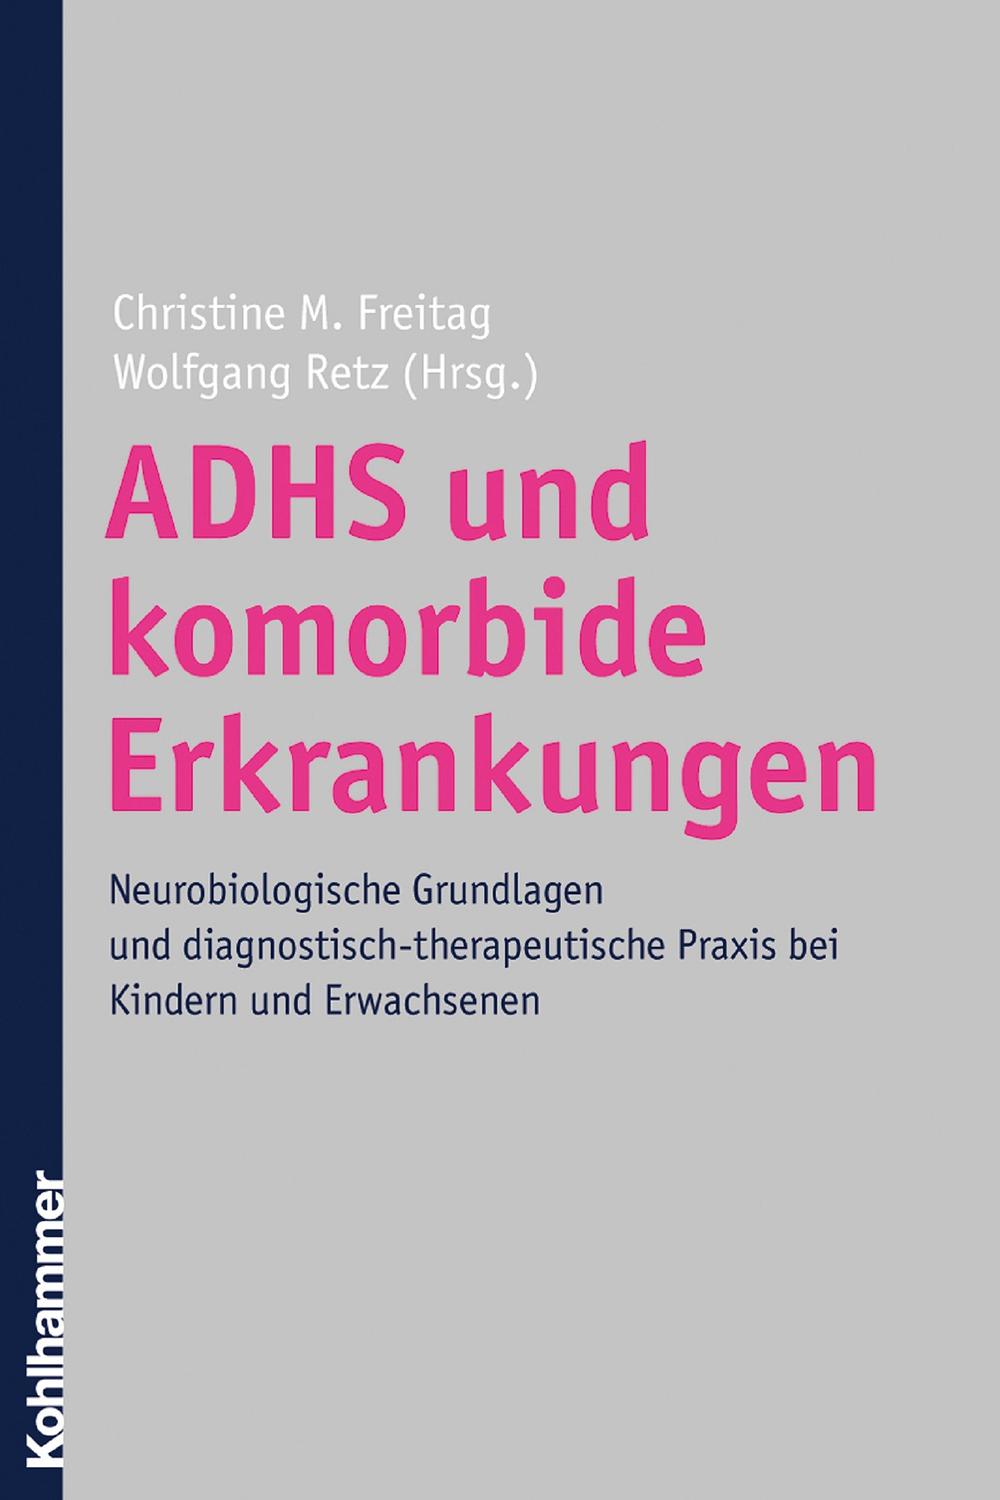 ADHS und komorbide Erkrankungen - Christine M. Freitag, Wolfgang Retz